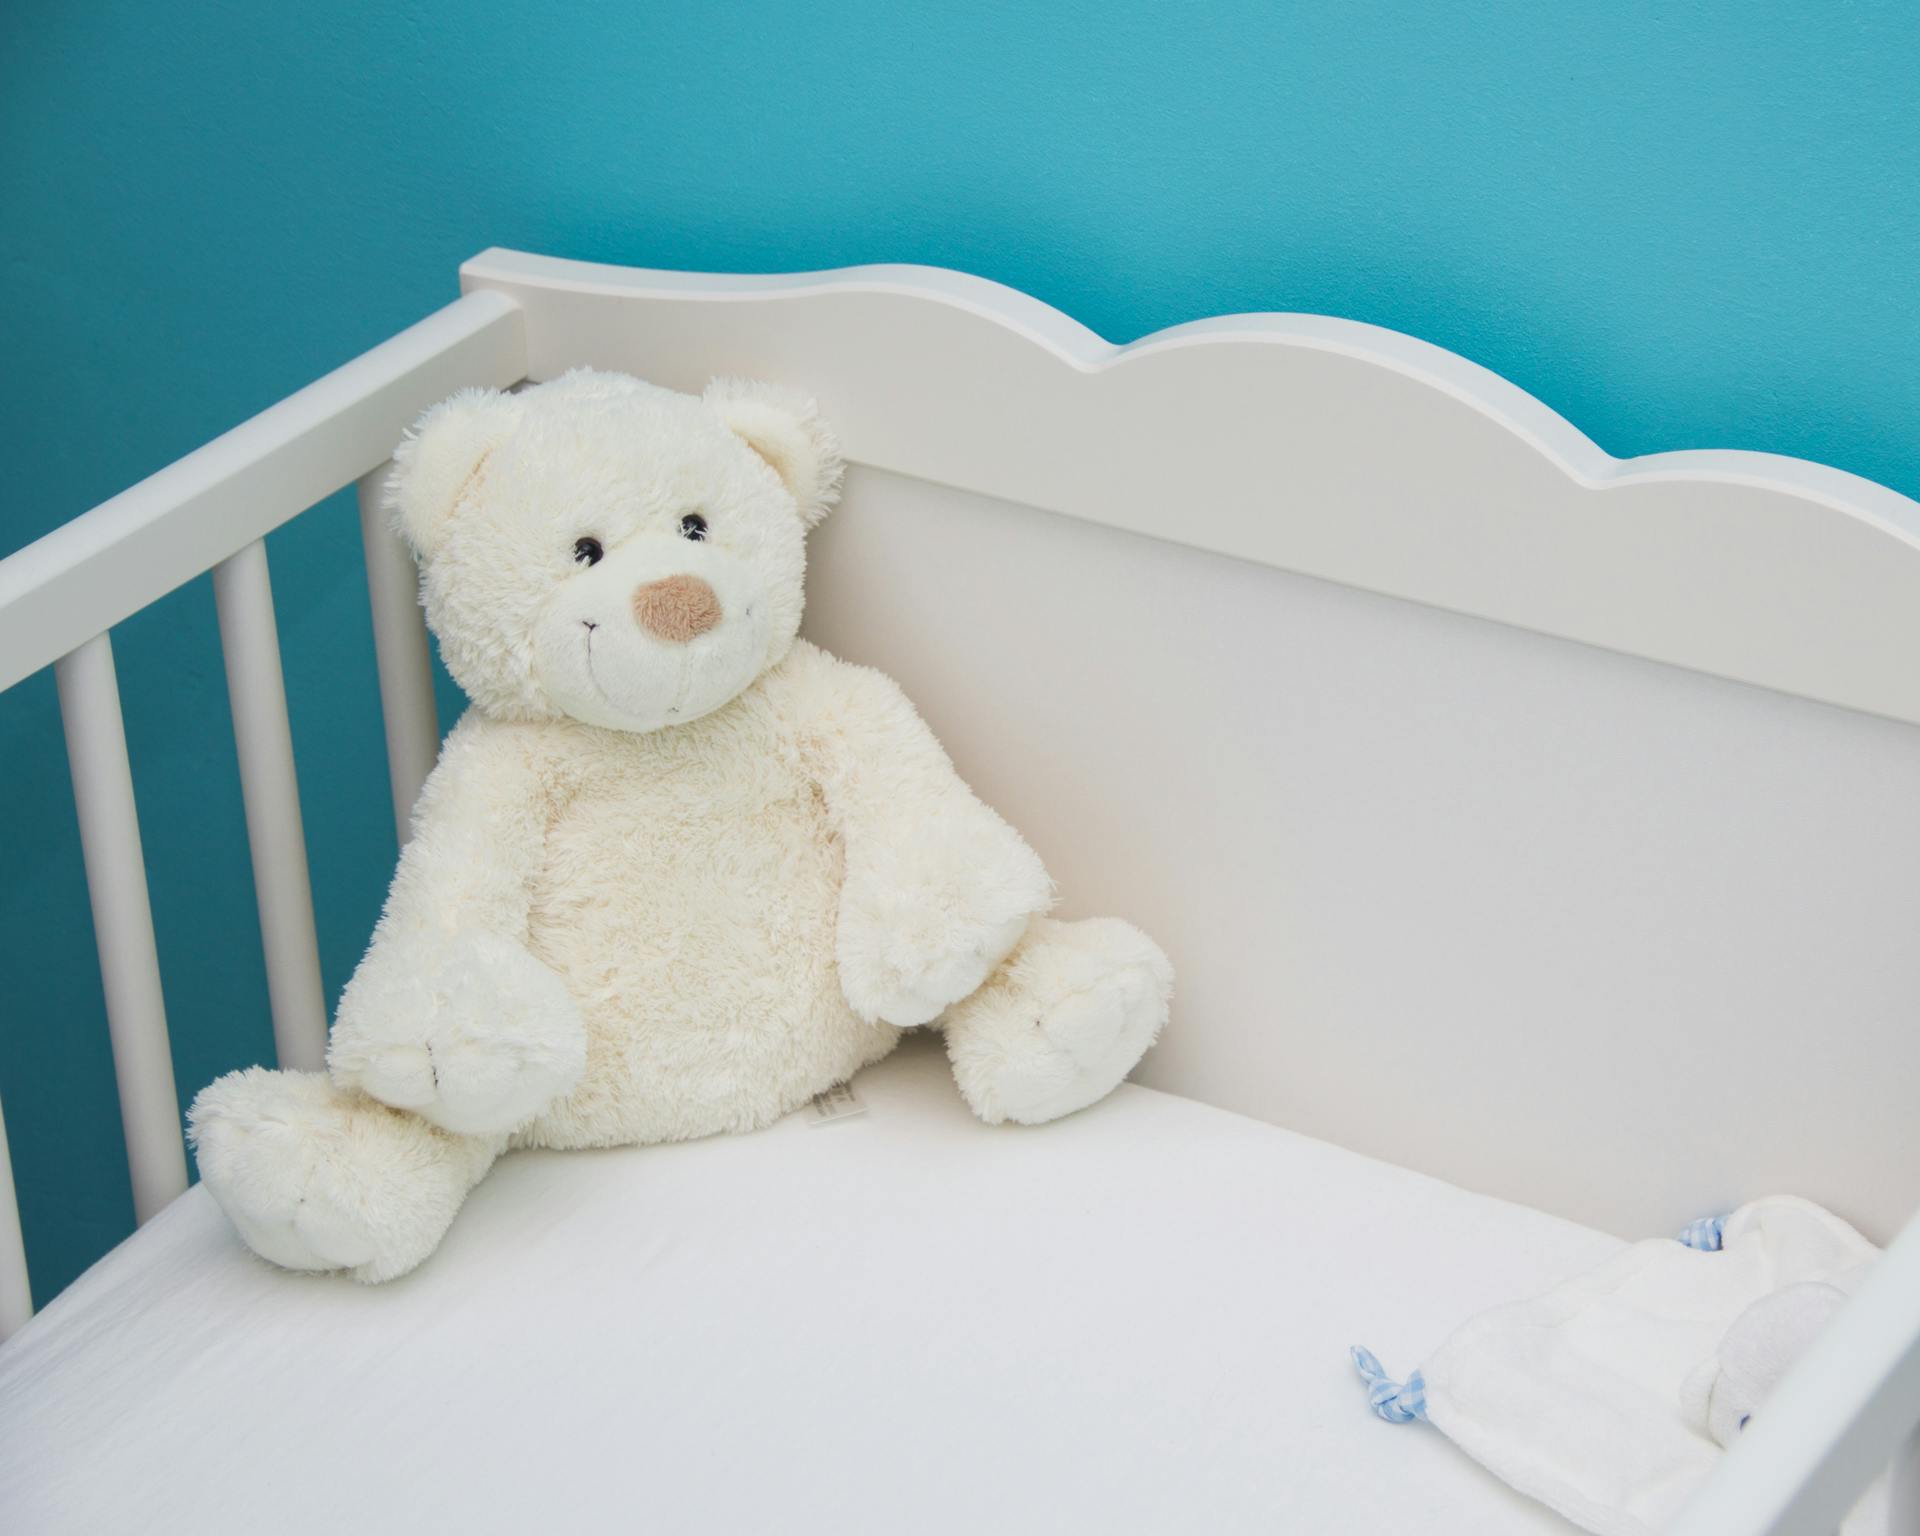 Une peluche d'ours blanc dans un berceau de bébé | Source : Pexels